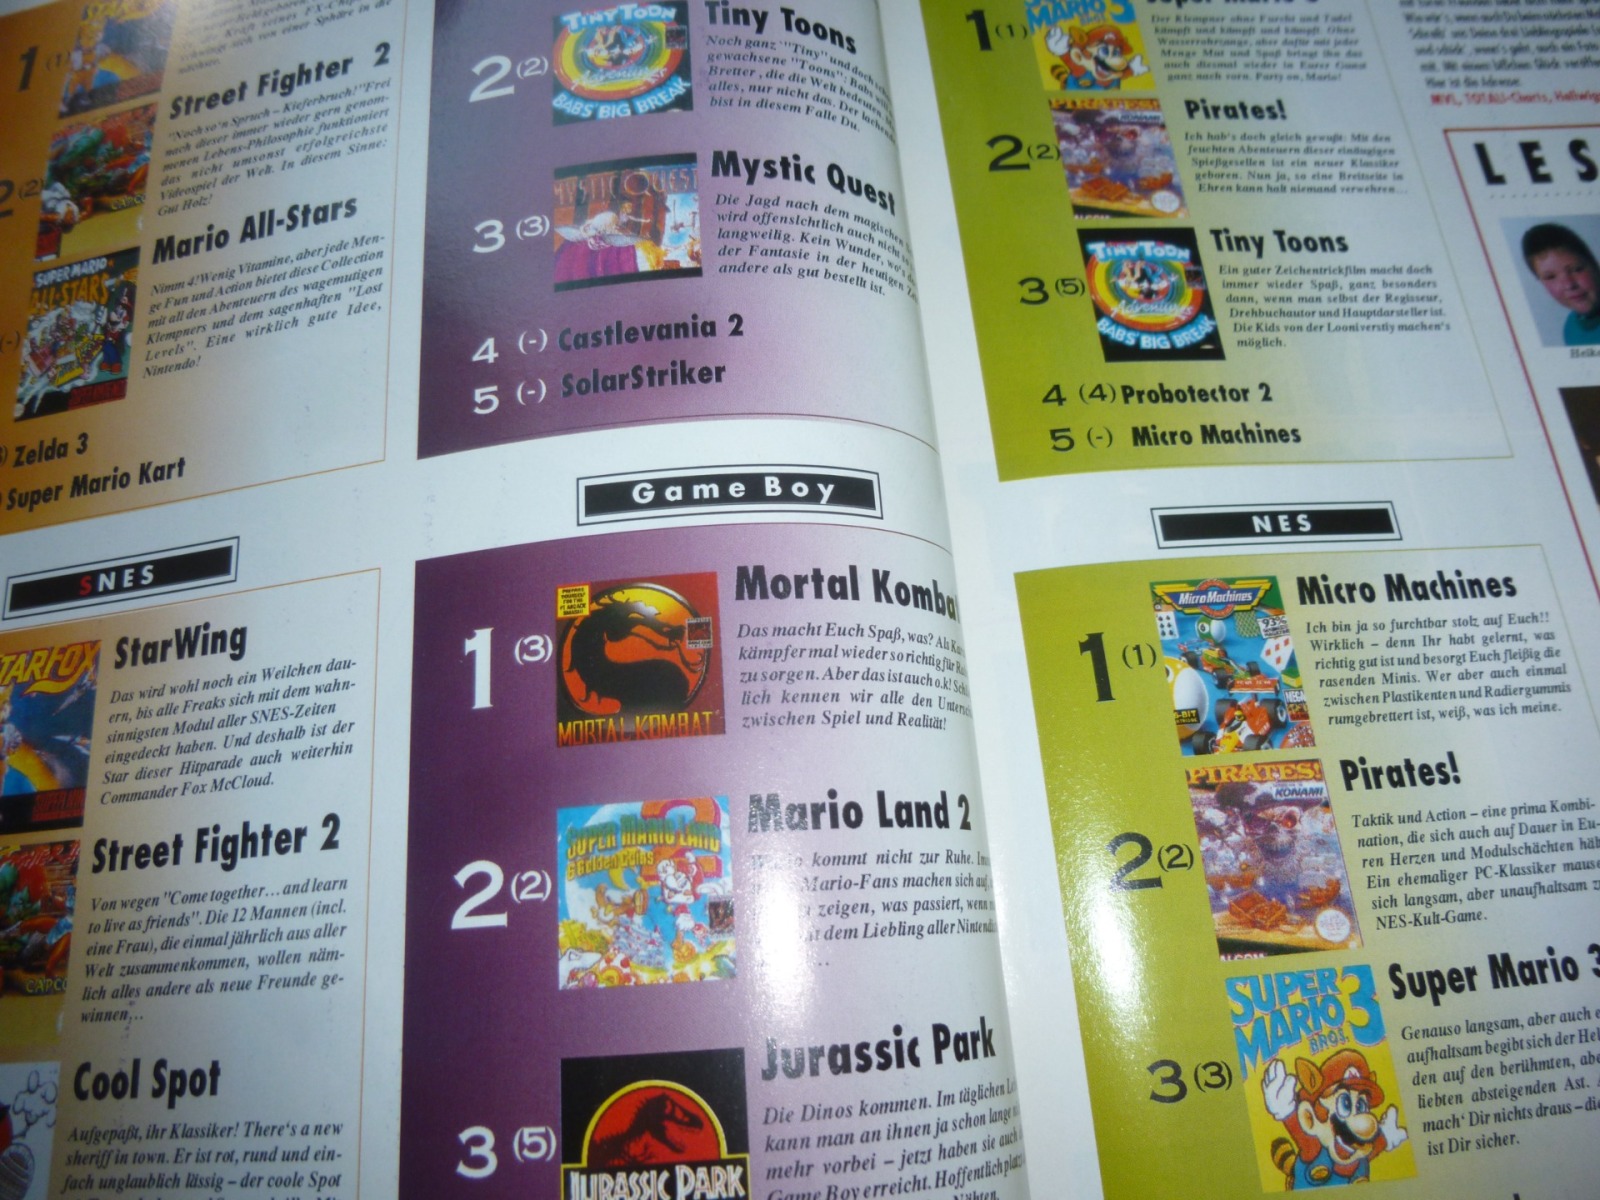 TOTAL Das unabhängige Magazin - 100% Nintendo - Ausgabe 12/93 1993 18